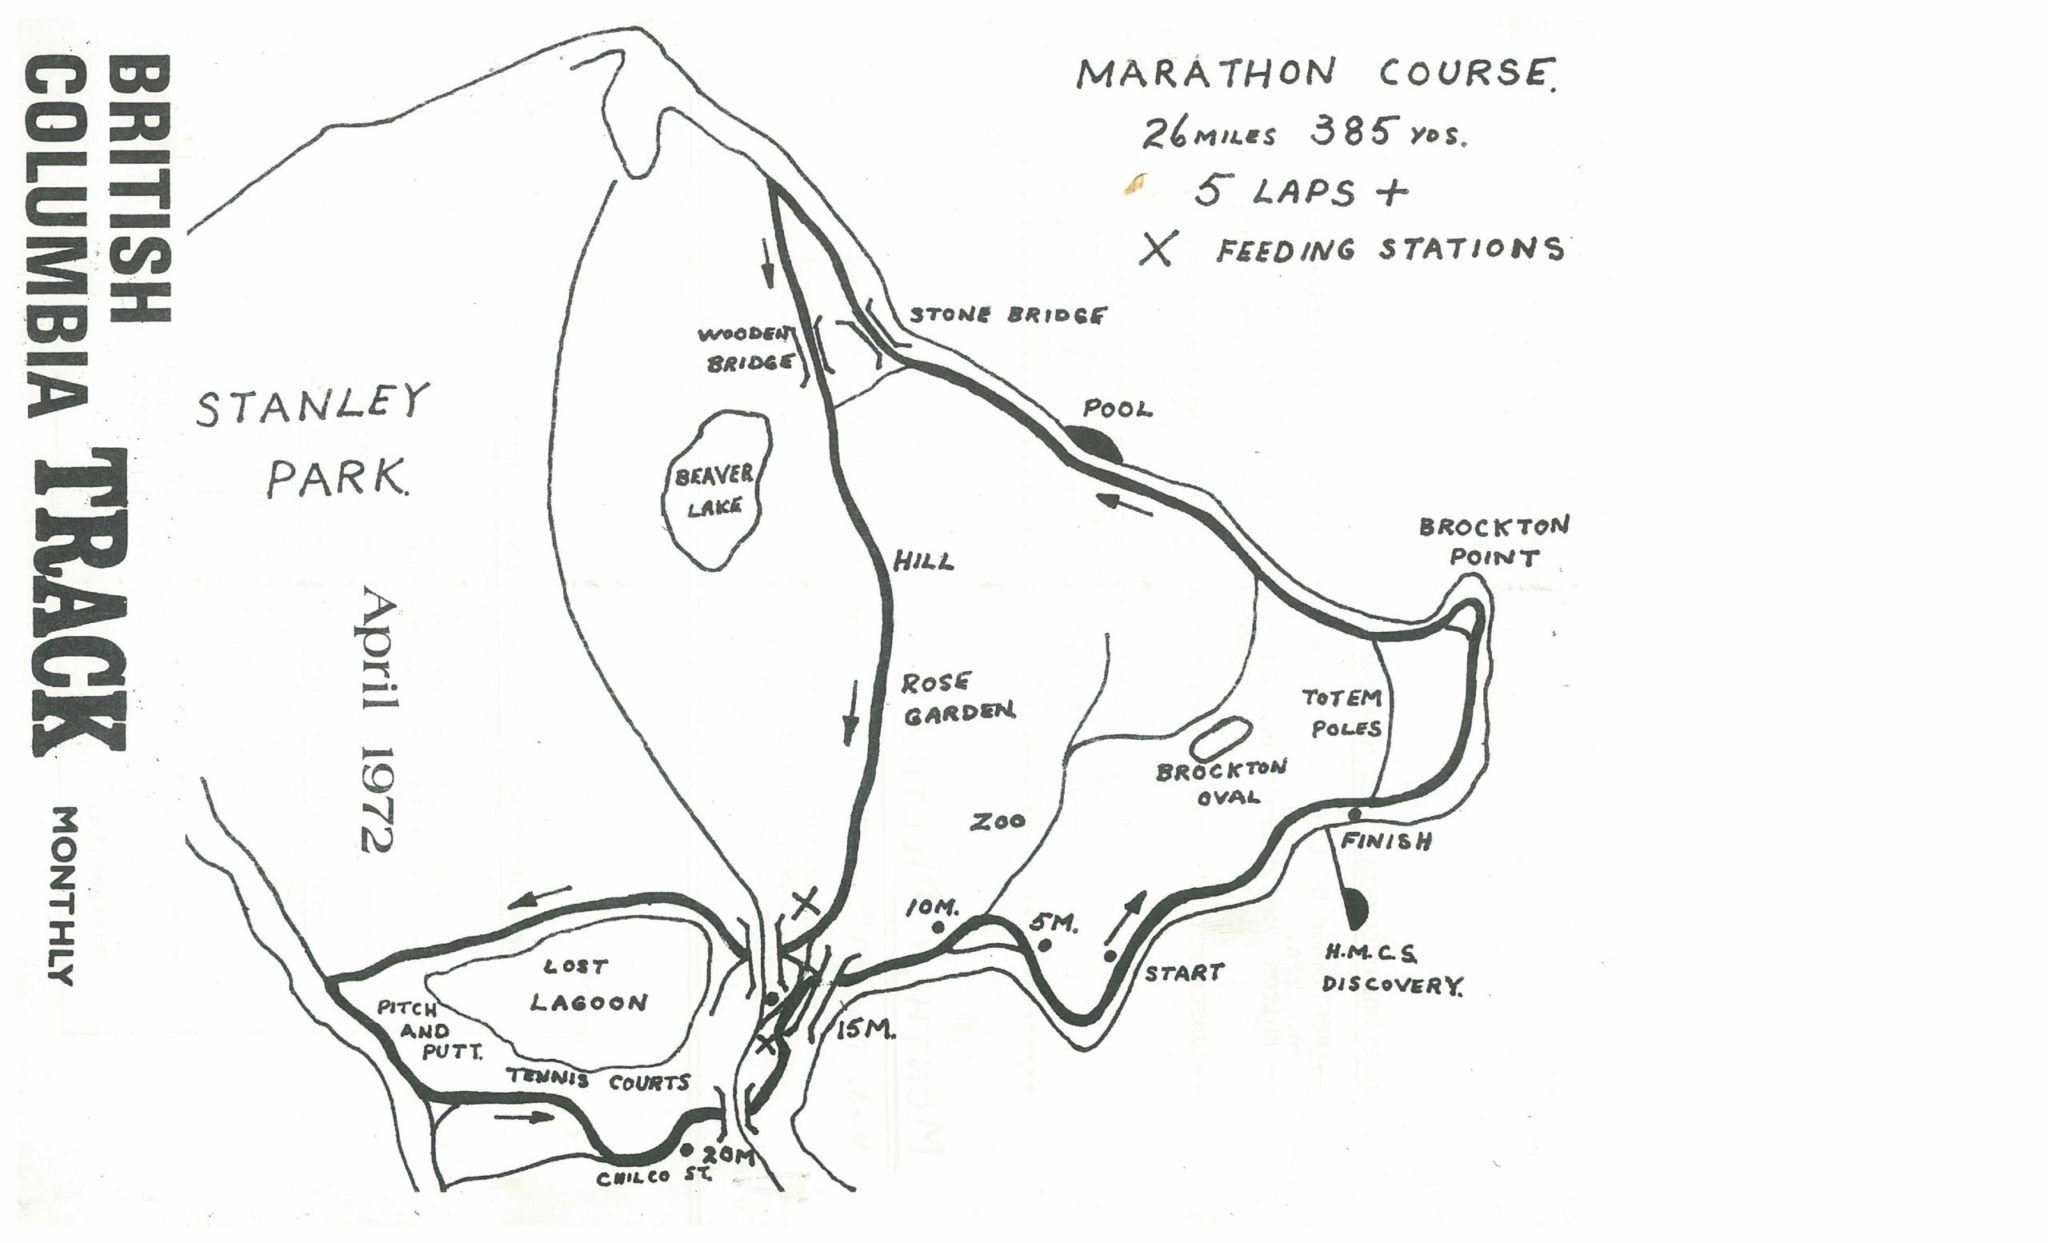 Vancouver Marathon 1972 Course Map